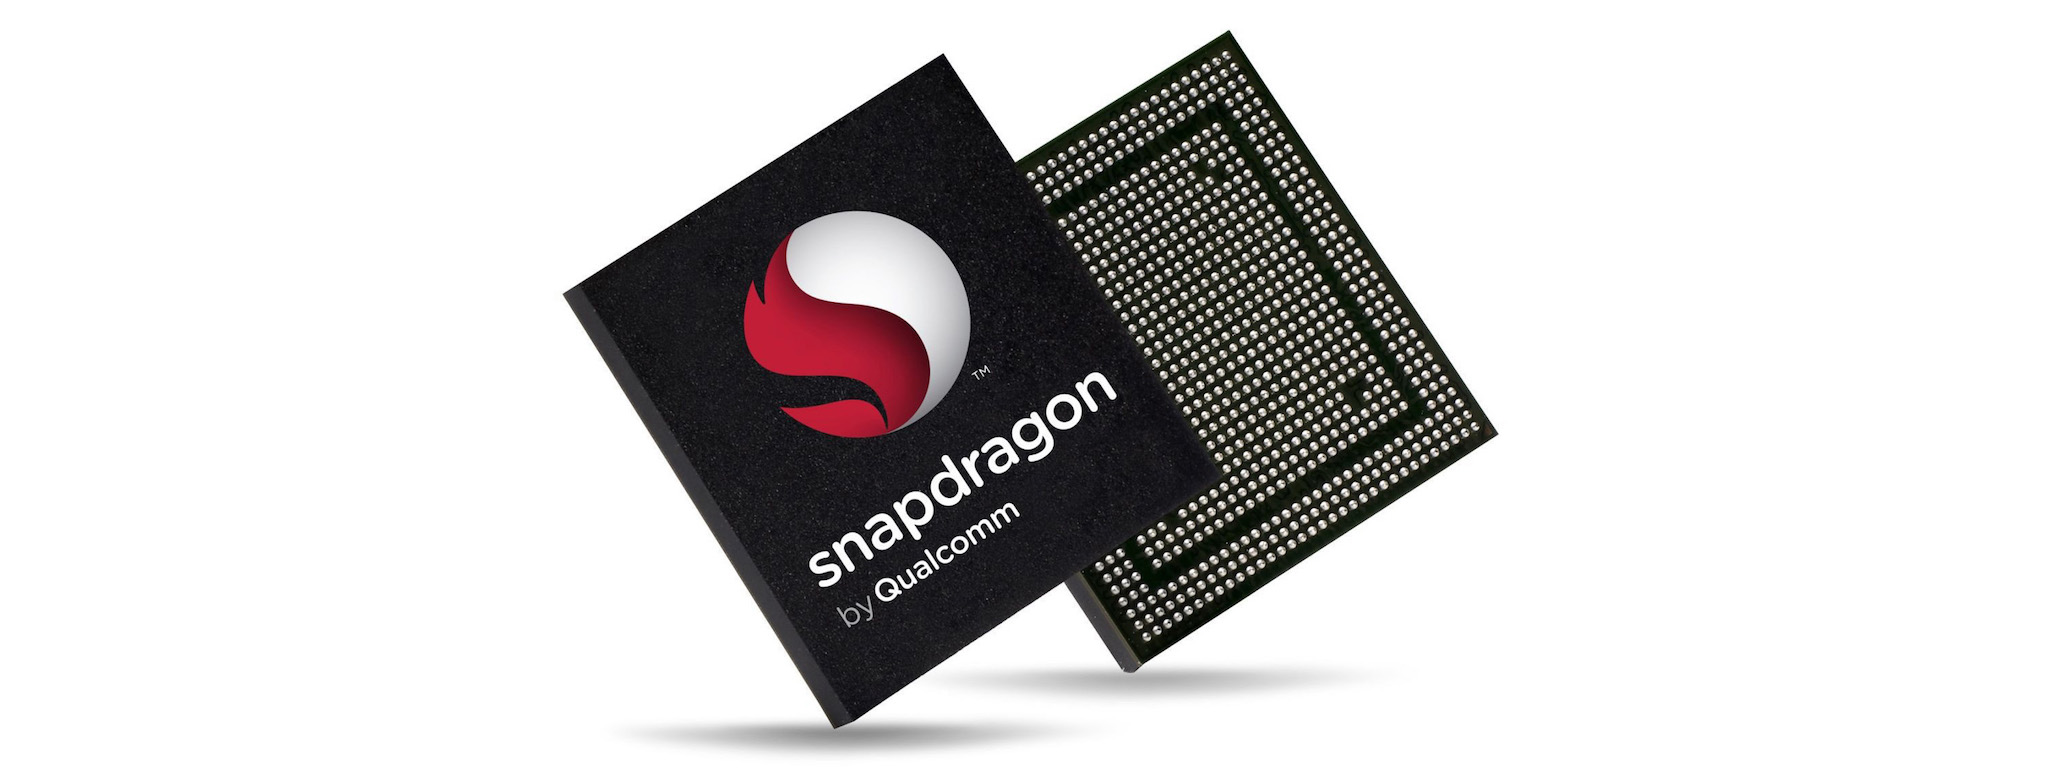 #MWC18: Qualcomm ra mắt dòng chip Snapdragon 700 dành cho máy cận cao cấp, tập trung vào AI, camera